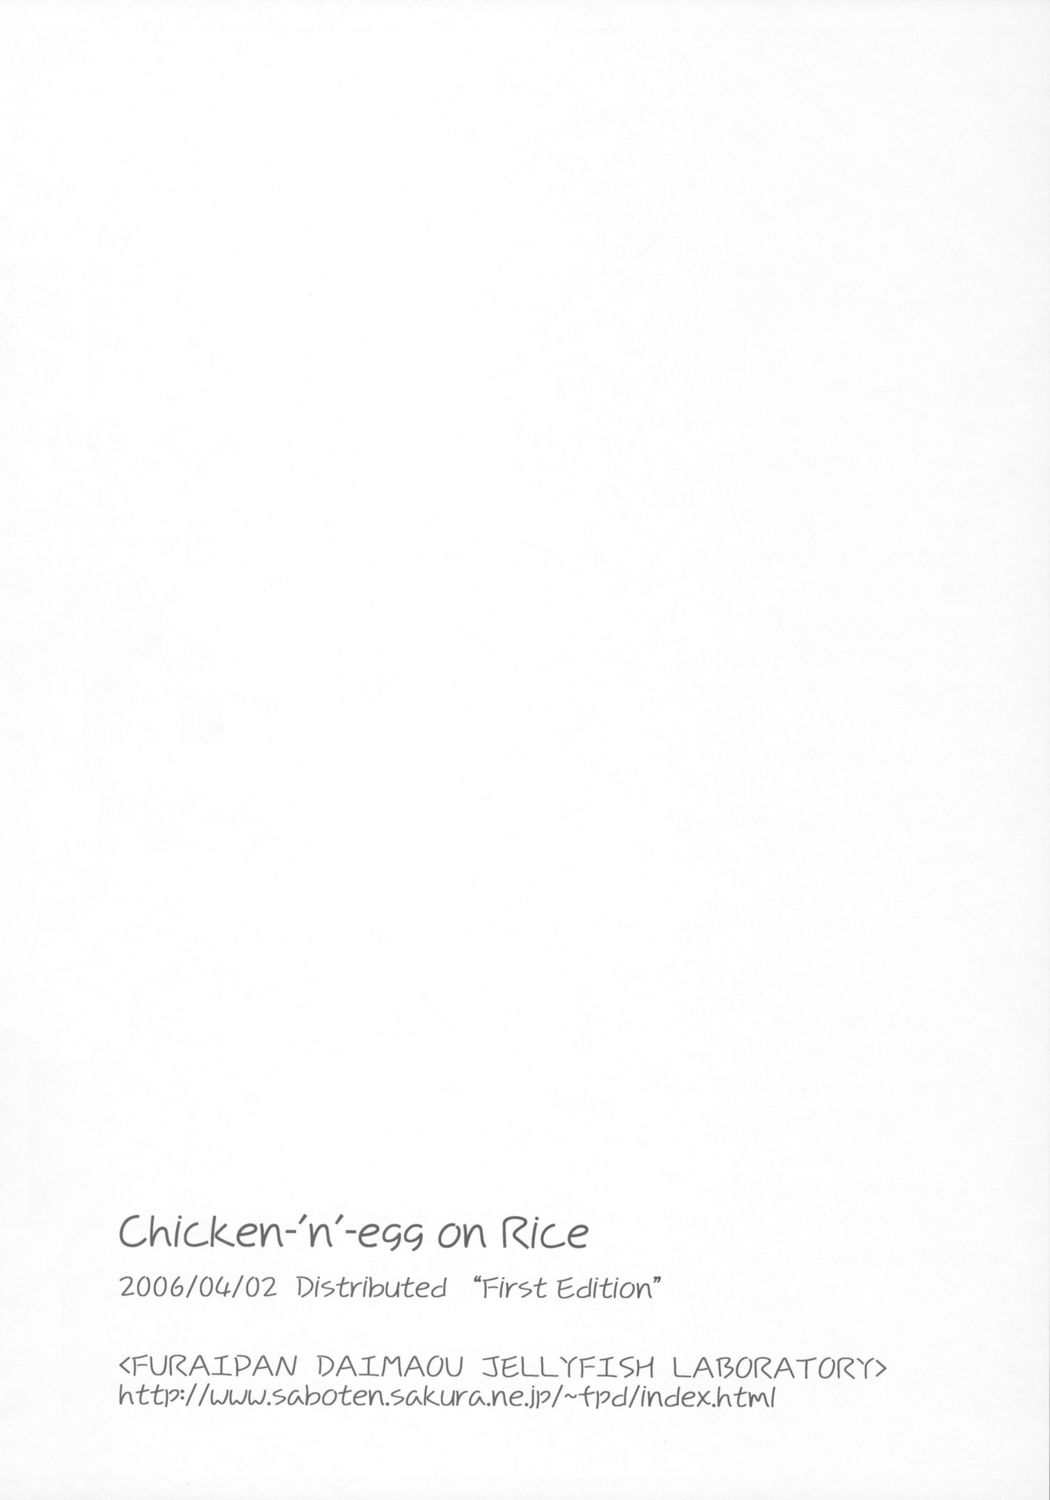 [ふらいぱん大魔王 (提灯暗光)] Chicken-'n'-egg on Rice (とっとこハム太郎)